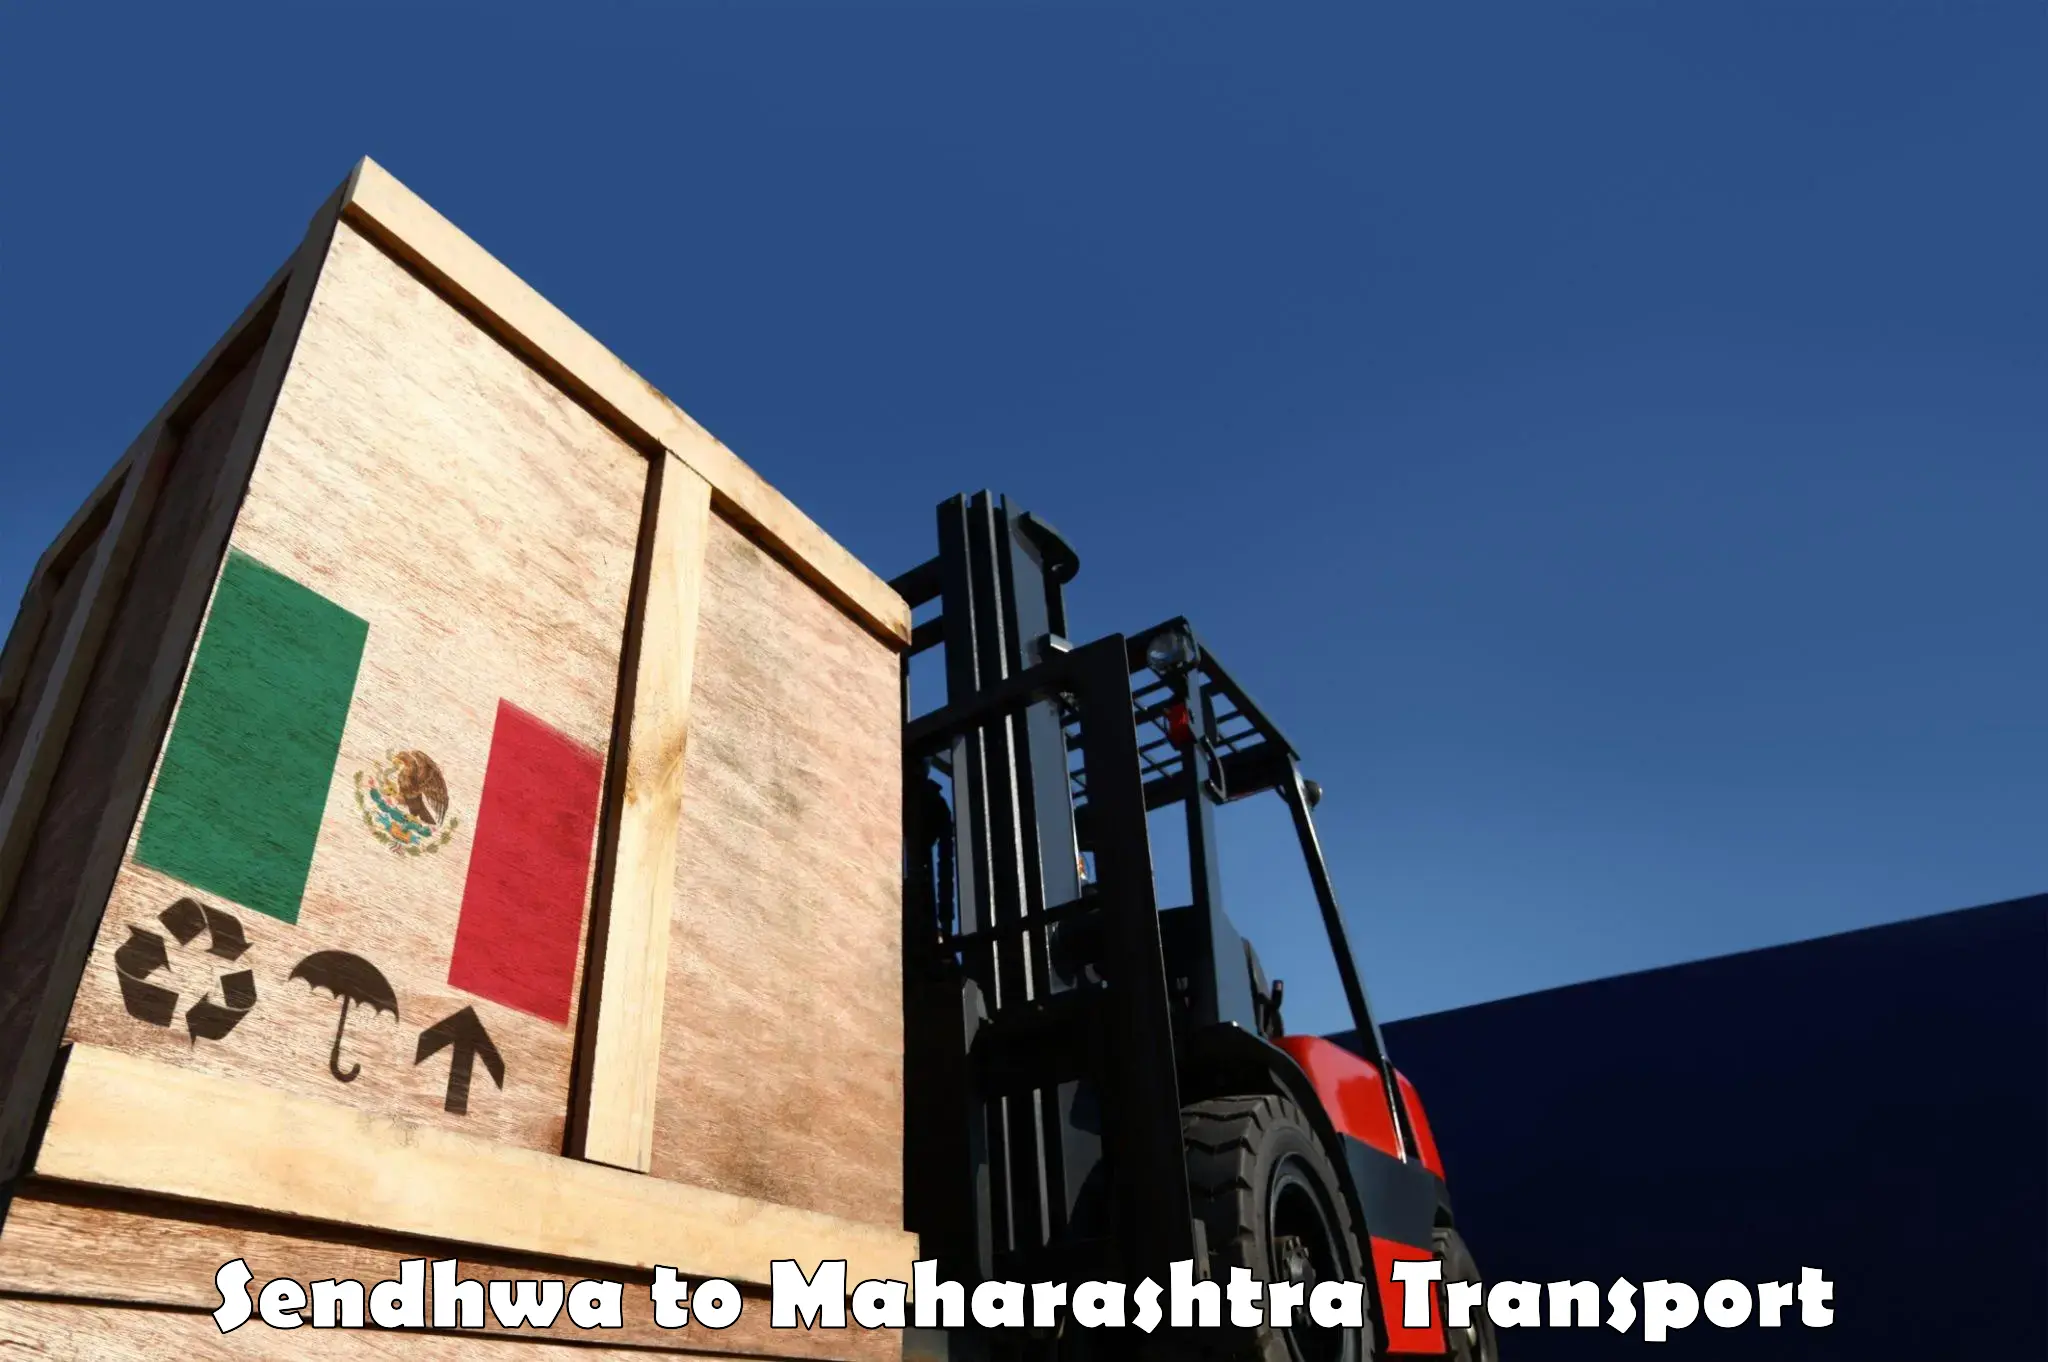 Truck transport companies in India in Sendhwa to Borivali